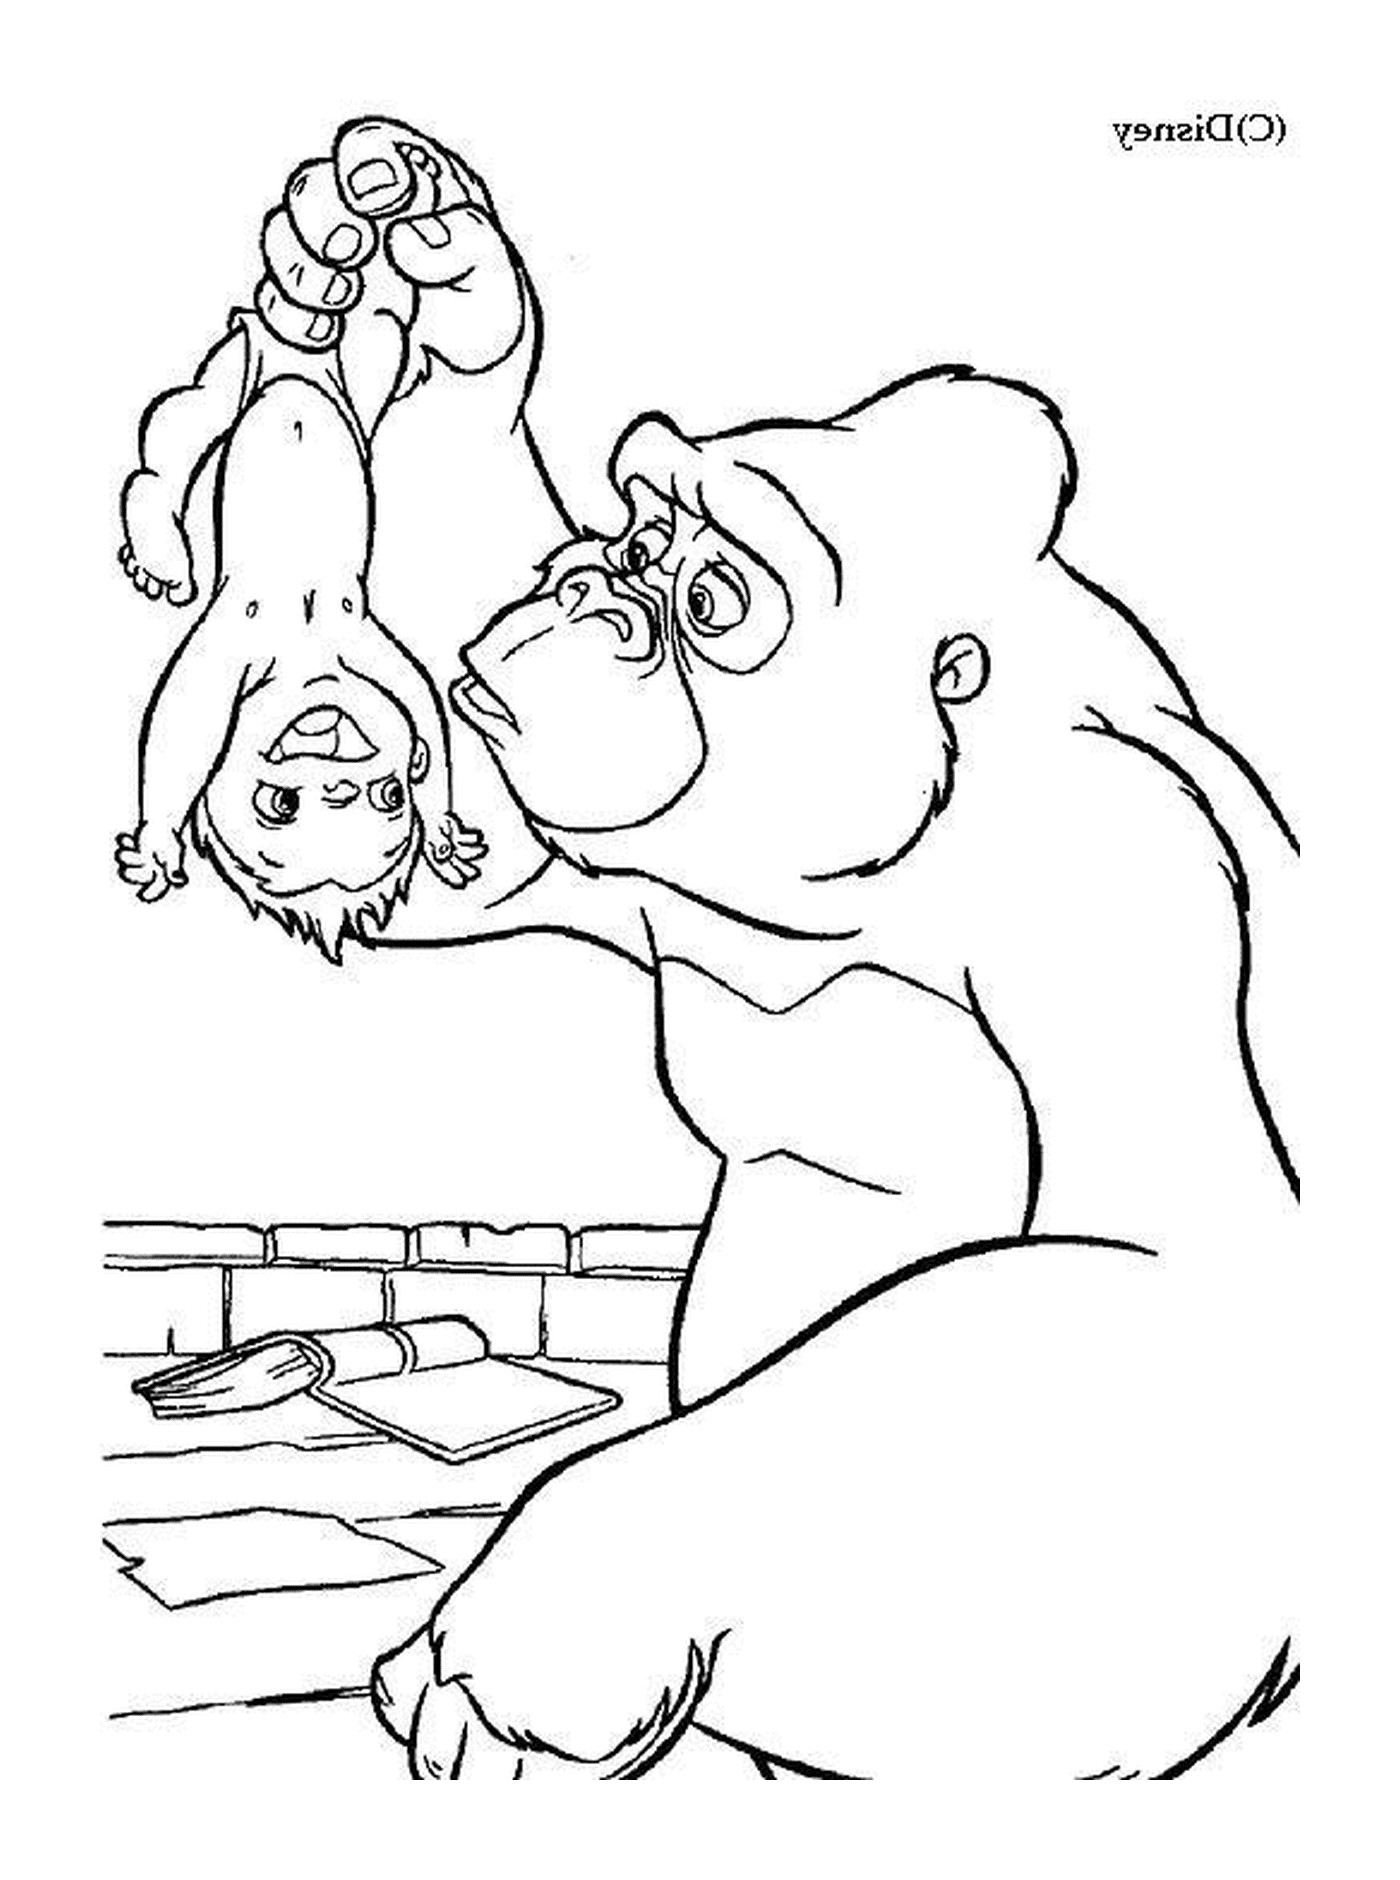  Gorilla und Junge spielen zusammen 